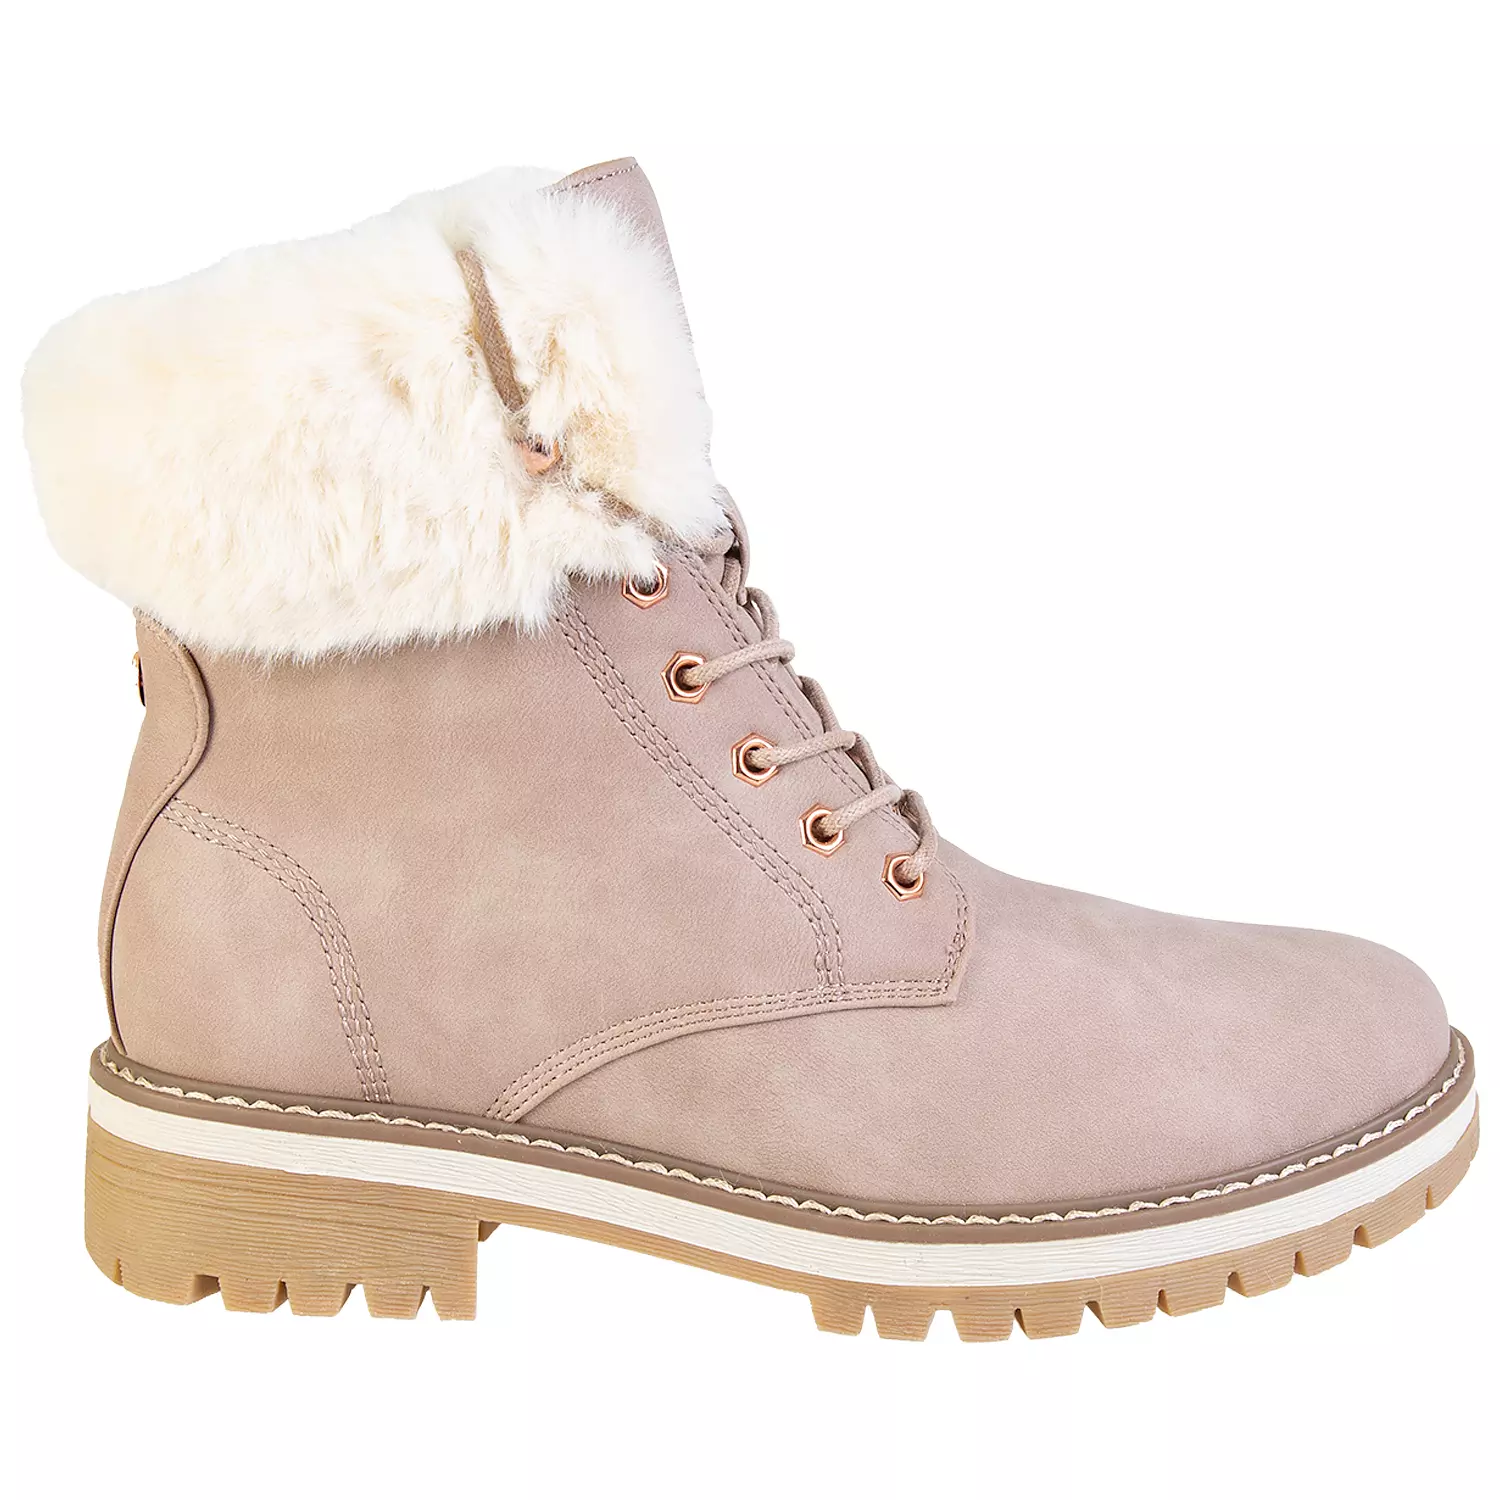 Lace-up faux fur trim fashion combat boots, pink, size 7